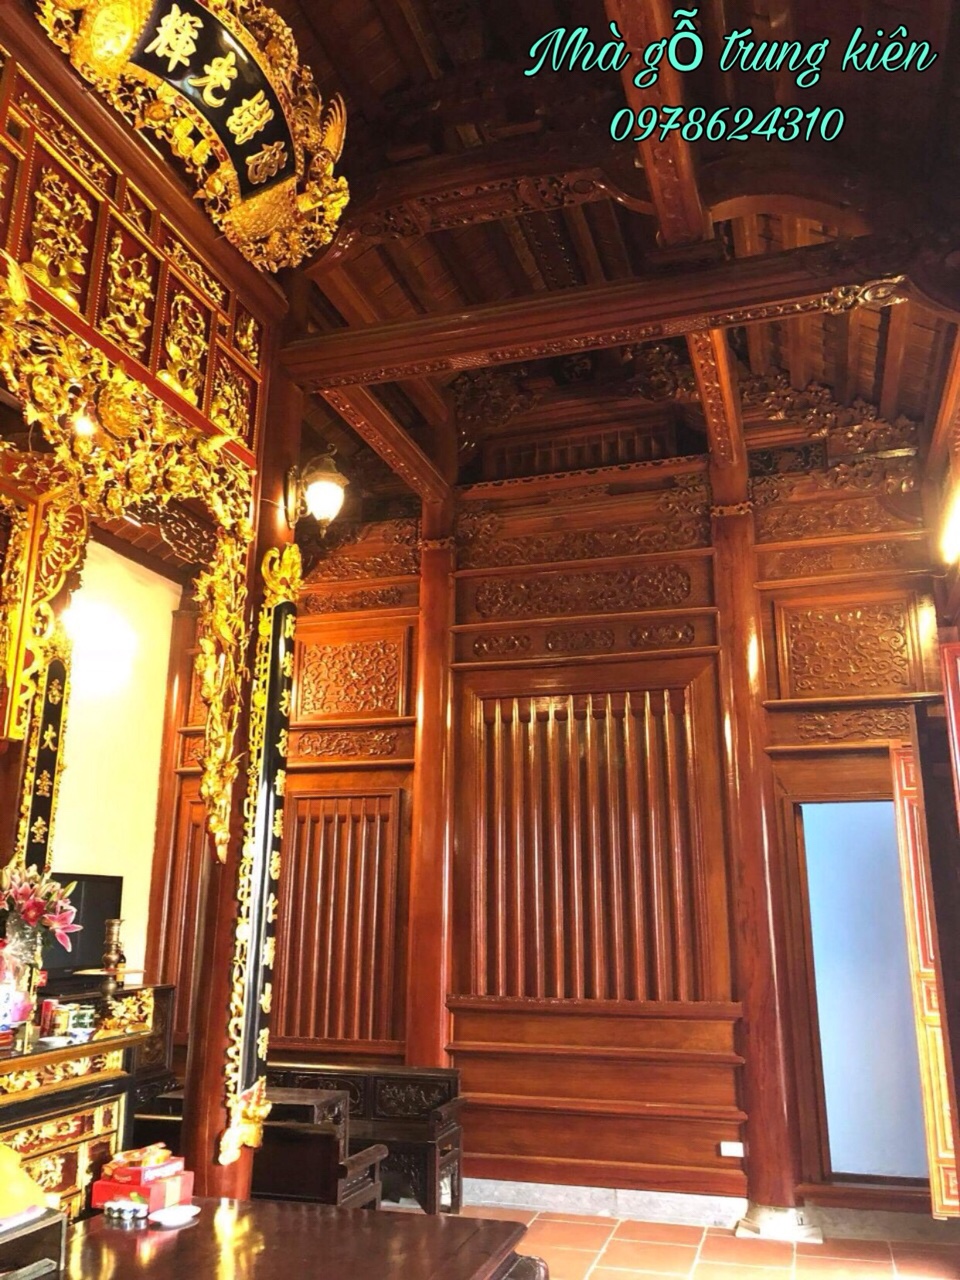 Nhà gỗ truyền thống - Nhà Gỗ Trung Kiên - Công Ty Sản Xuất Và Thương Mại Đồ Gỗ Trung Kiên